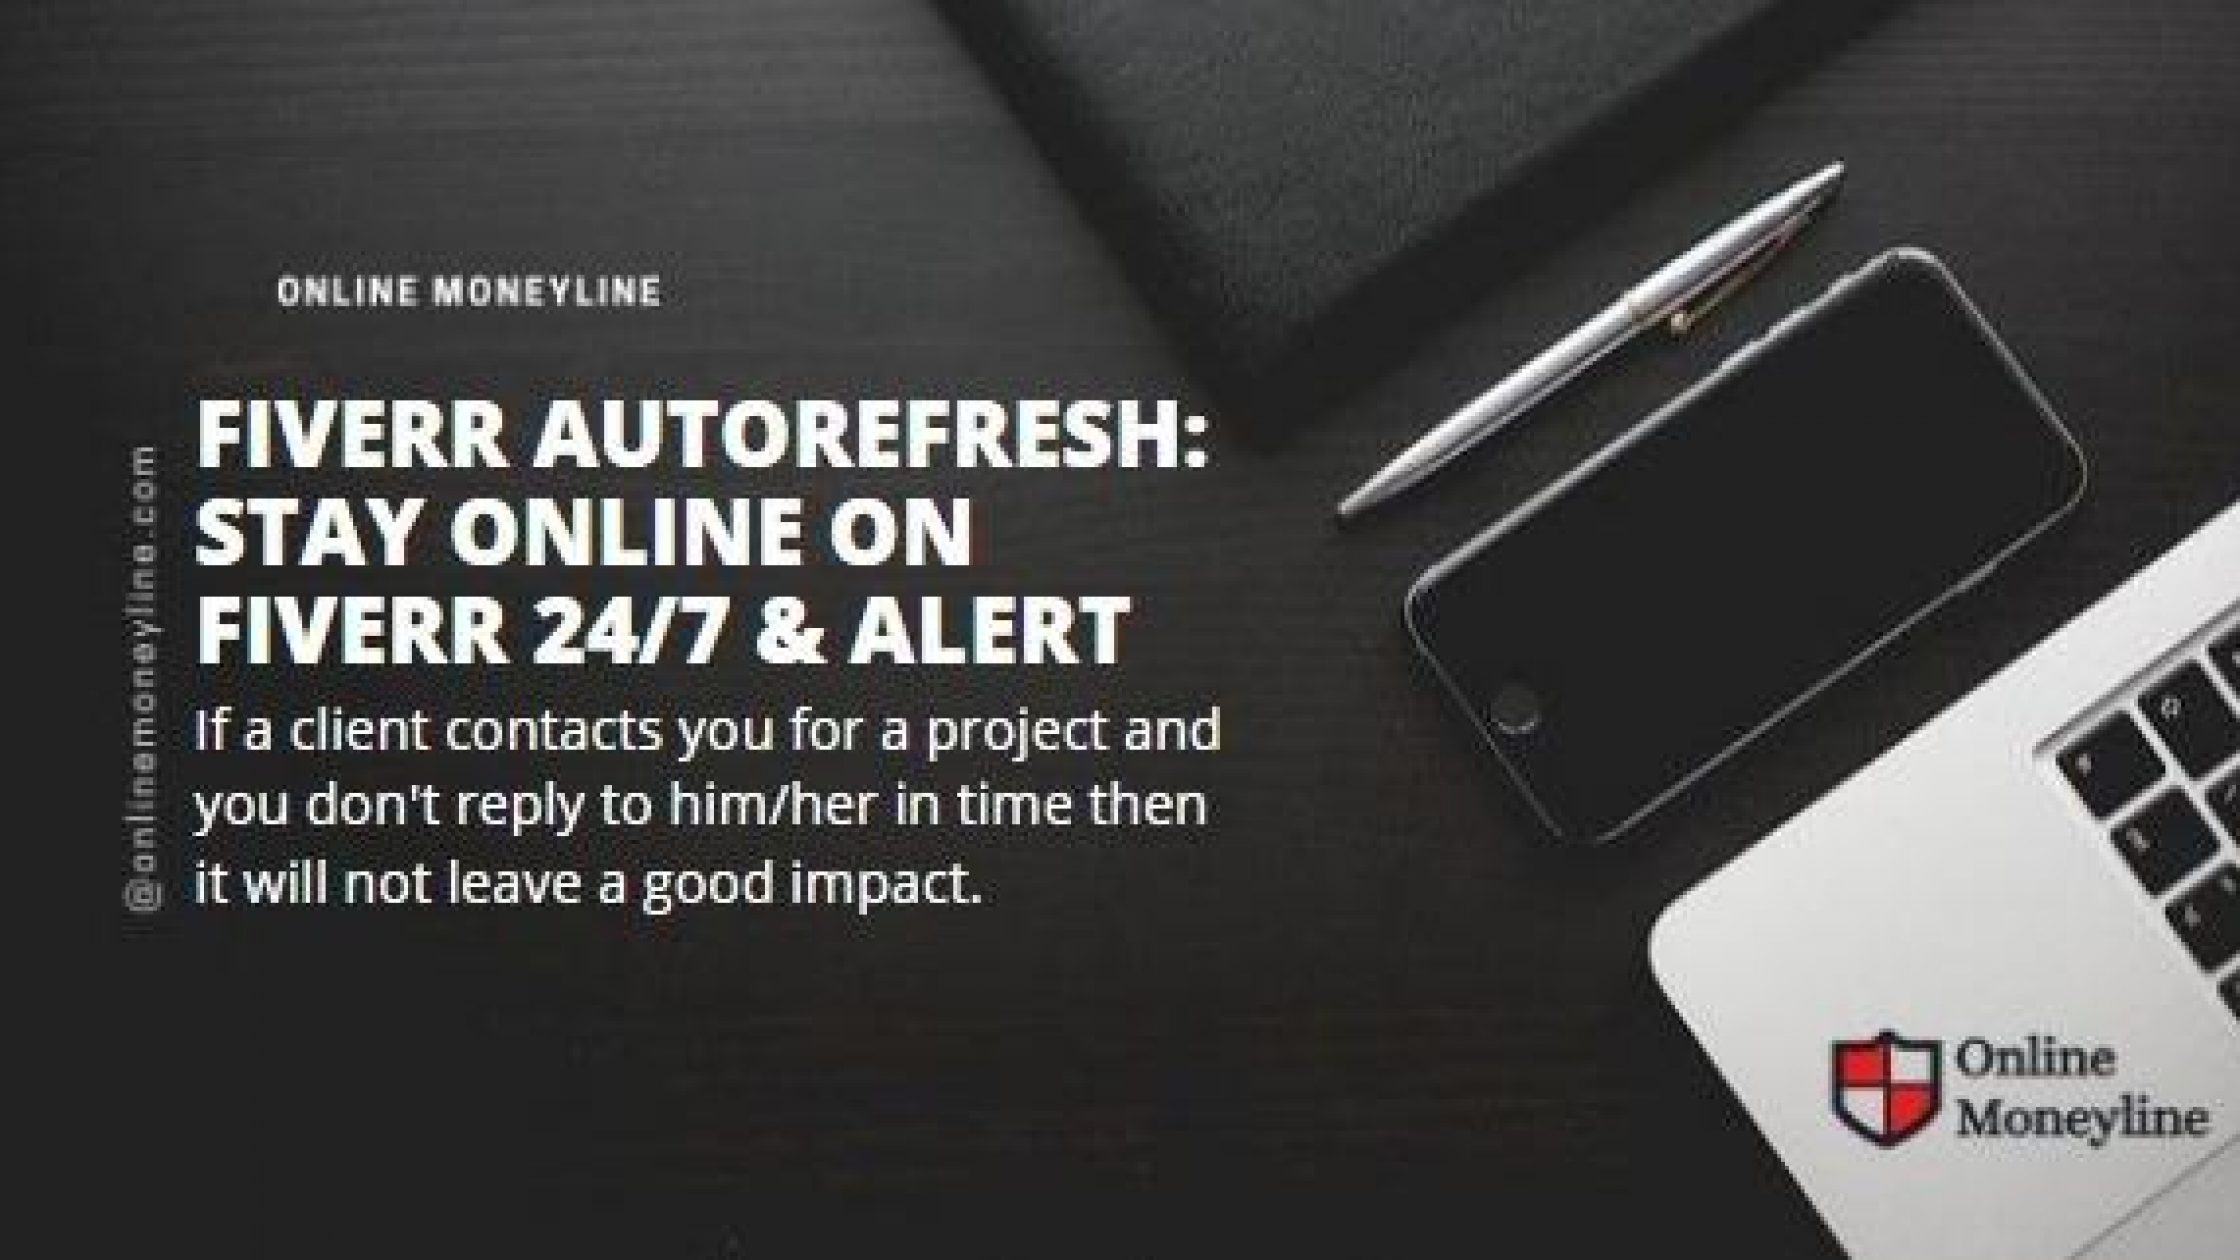 Fiverr Autorefresh: Stay Online on Fiverr 24/7 & ALERT